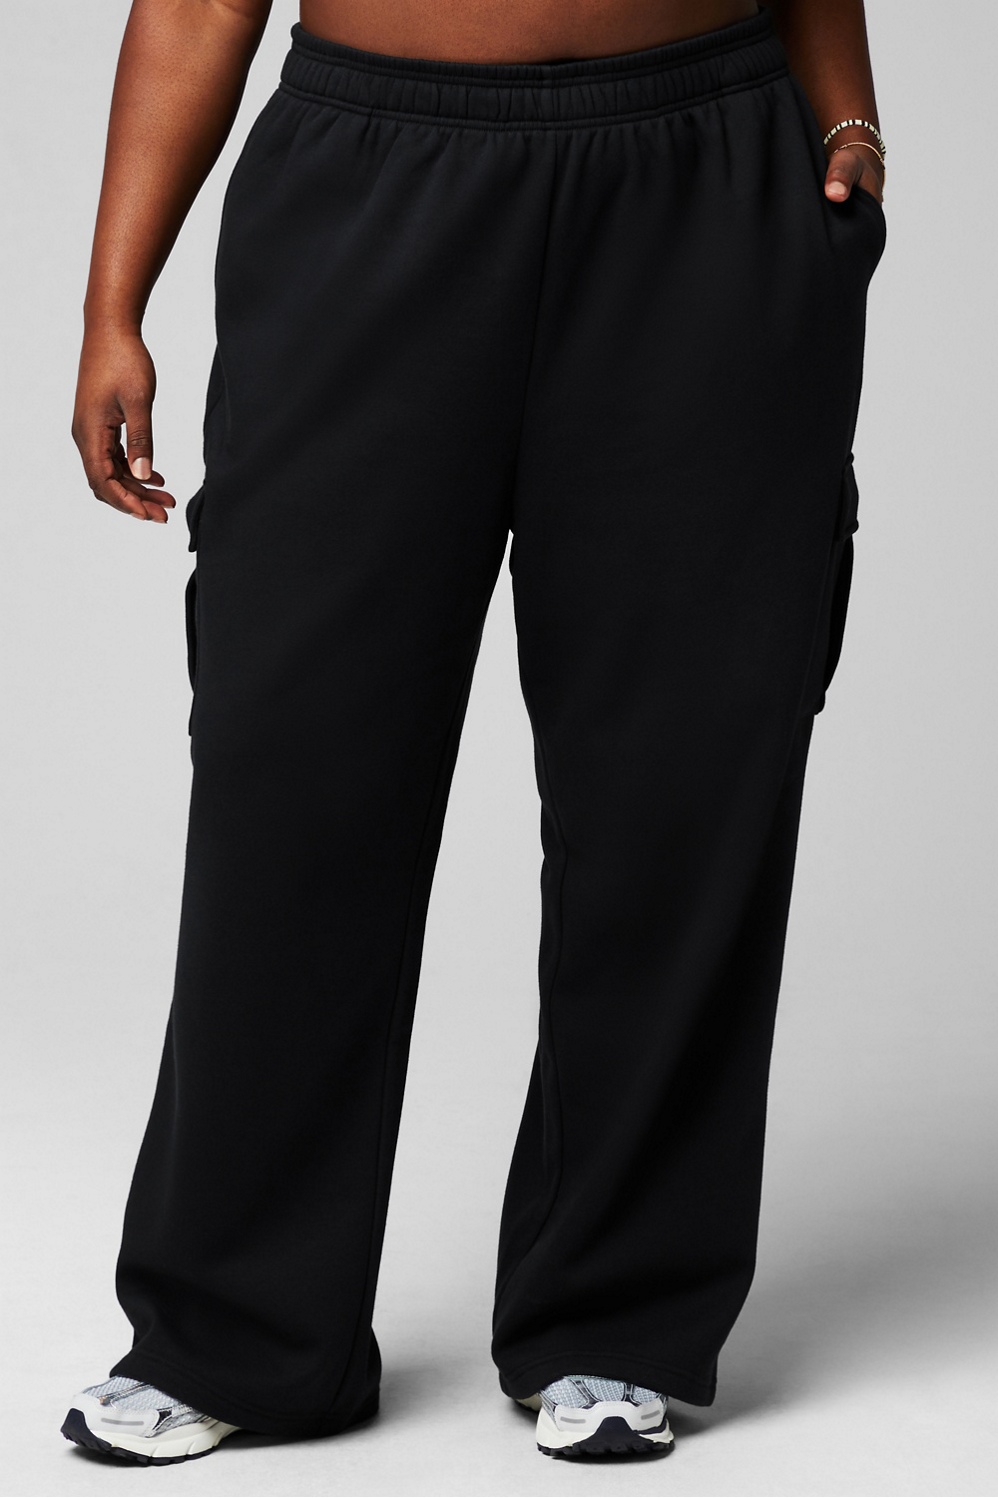 Tek Gear Women's Mid Rise Wide Leg Cozy Fleece Pants Black Tie 1X